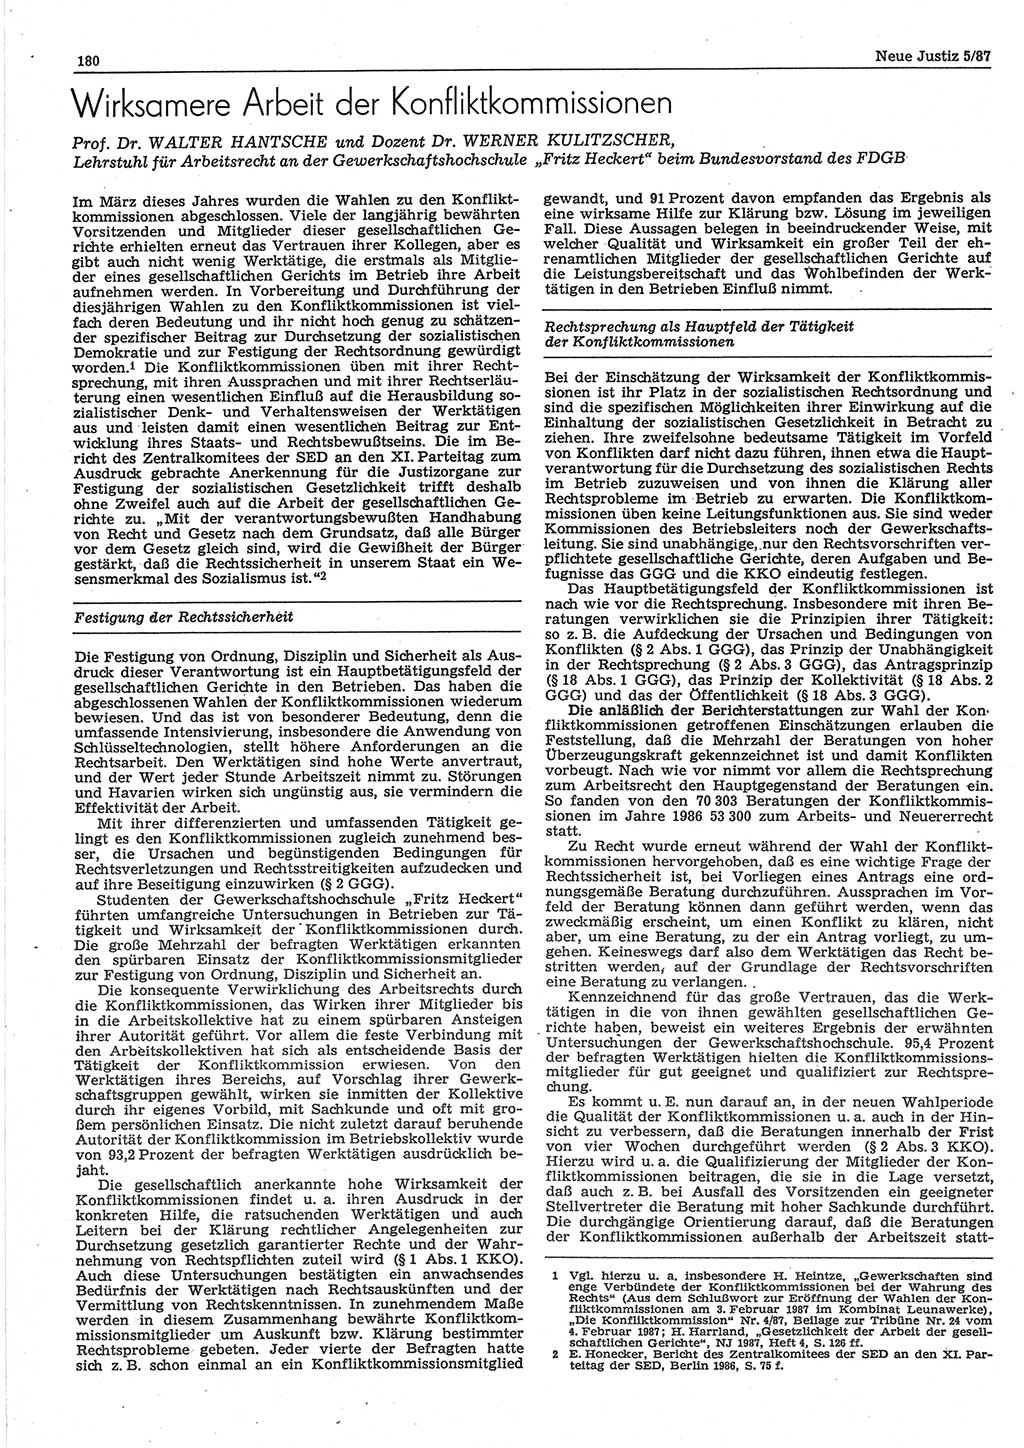 Neue Justiz (NJ), Zeitschrift für sozialistisches Recht und Gesetzlichkeit [Deutsche Demokratische Republik (DDR)], 41. Jahrgang 1987, Seite 180 (NJ DDR 1987, S. 180)